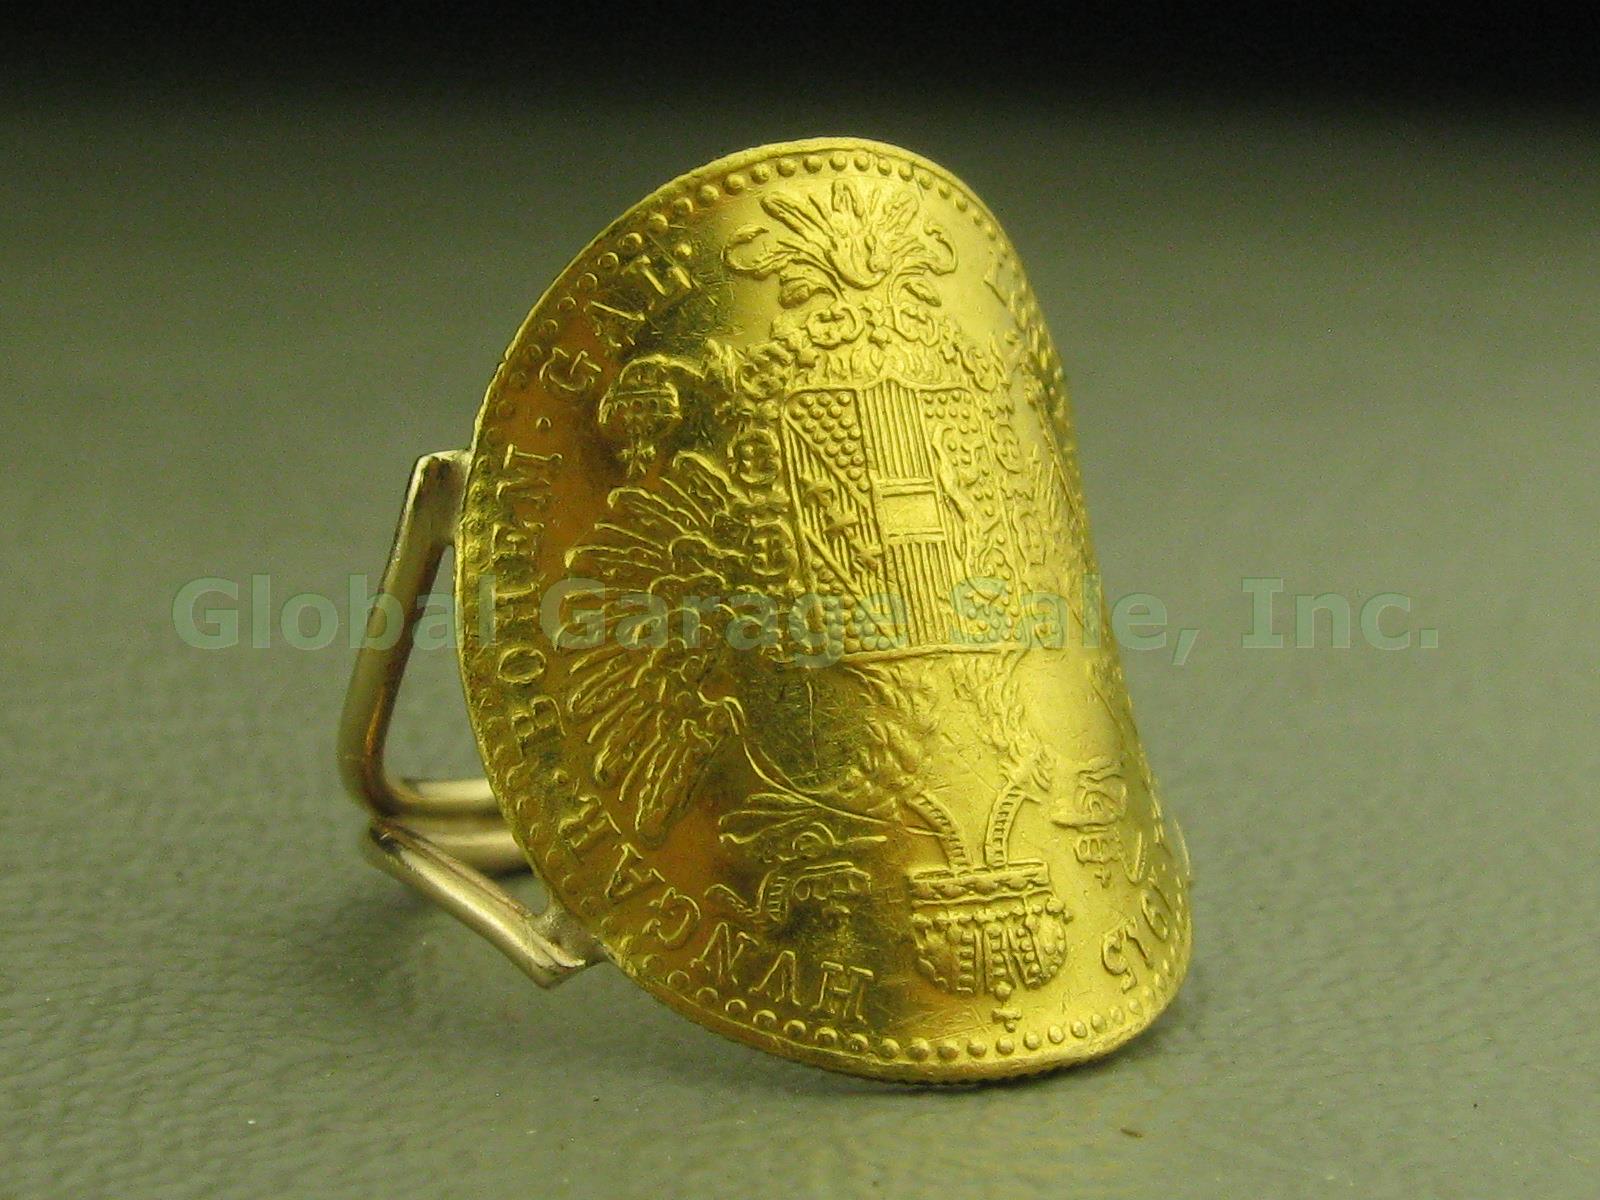 1915 Austria Avstriae Imperator IOS IDG Franc Ducat Gold Coin Ring 4.3g Sz 4.75